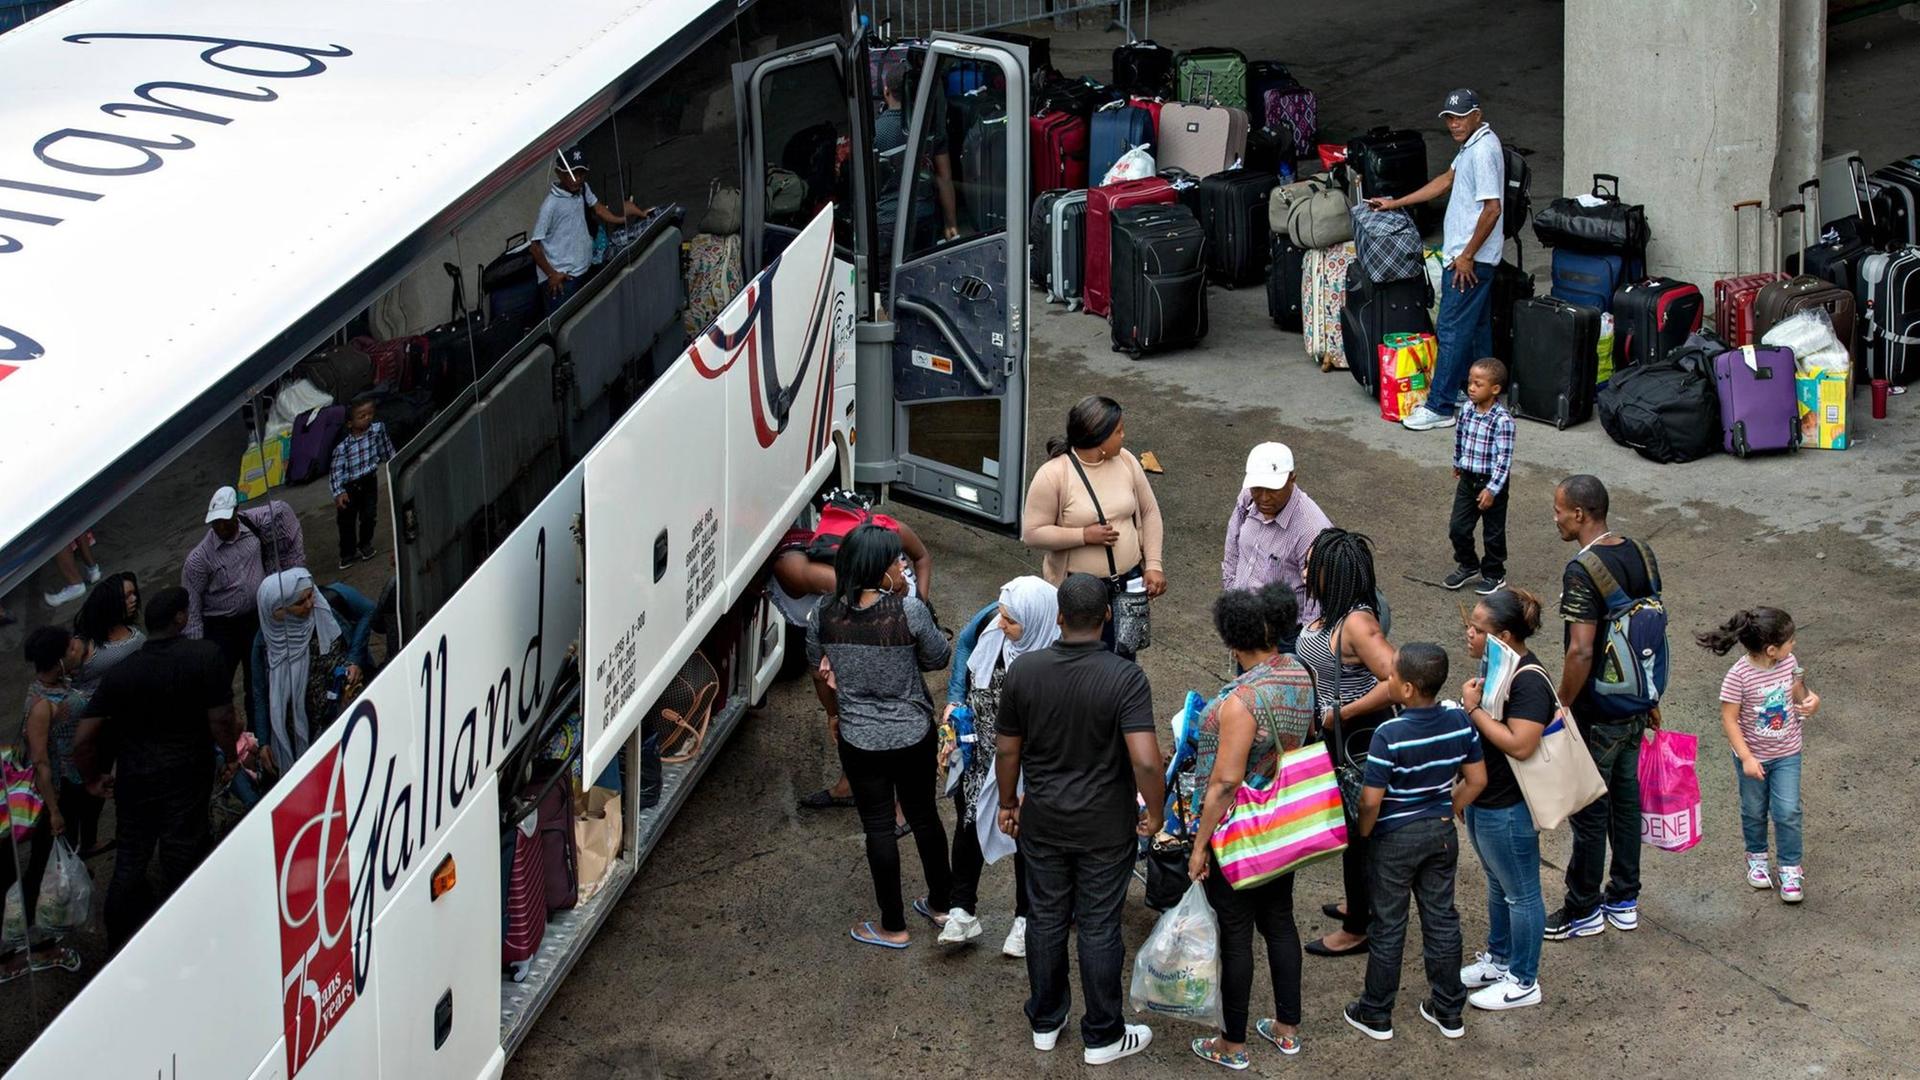 Ein Bus mit Aslysuchenden am 4. August 2017 im Olympic Stadium in Montreal, Quebec, Kanada. Die Zahl der Flüchtlinge hat sich in Quebec seit Mai pro Tag verdreifacht. 70 Prozent von ihnen sind aus Haiti. Bisher haben 6.500 von ihnen in Kanada Asyl beantragt.